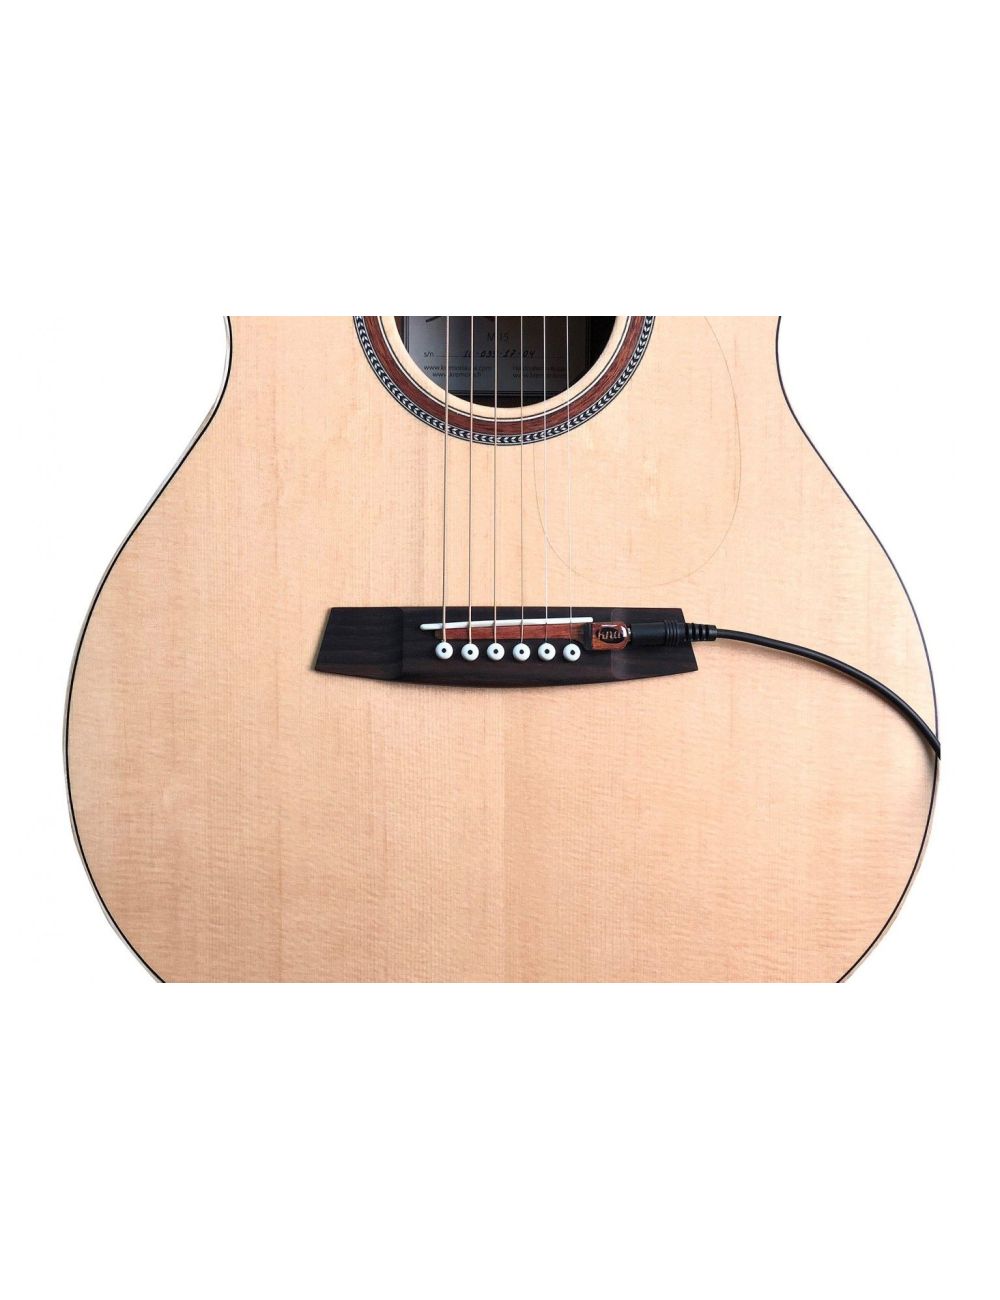 Kremona KNA SG-1 Micro piézo-électrique pour guitare acoustique